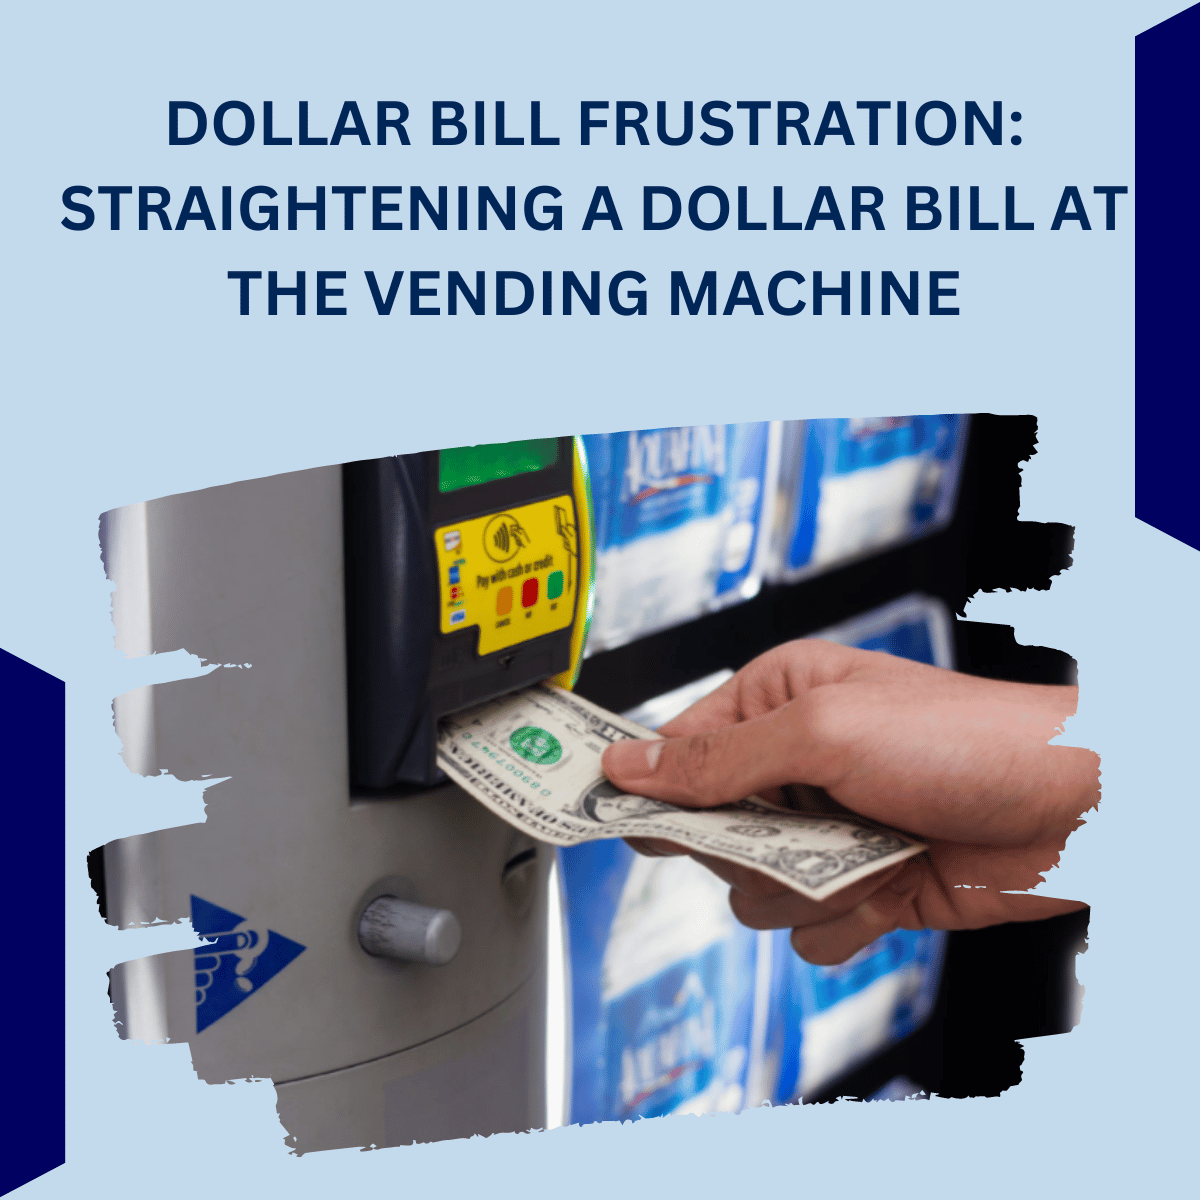 DOLLAR BILL FRUSTRATION: STRAIGHTENING A DOLLAR BILL AT THE VENDING MACHINE